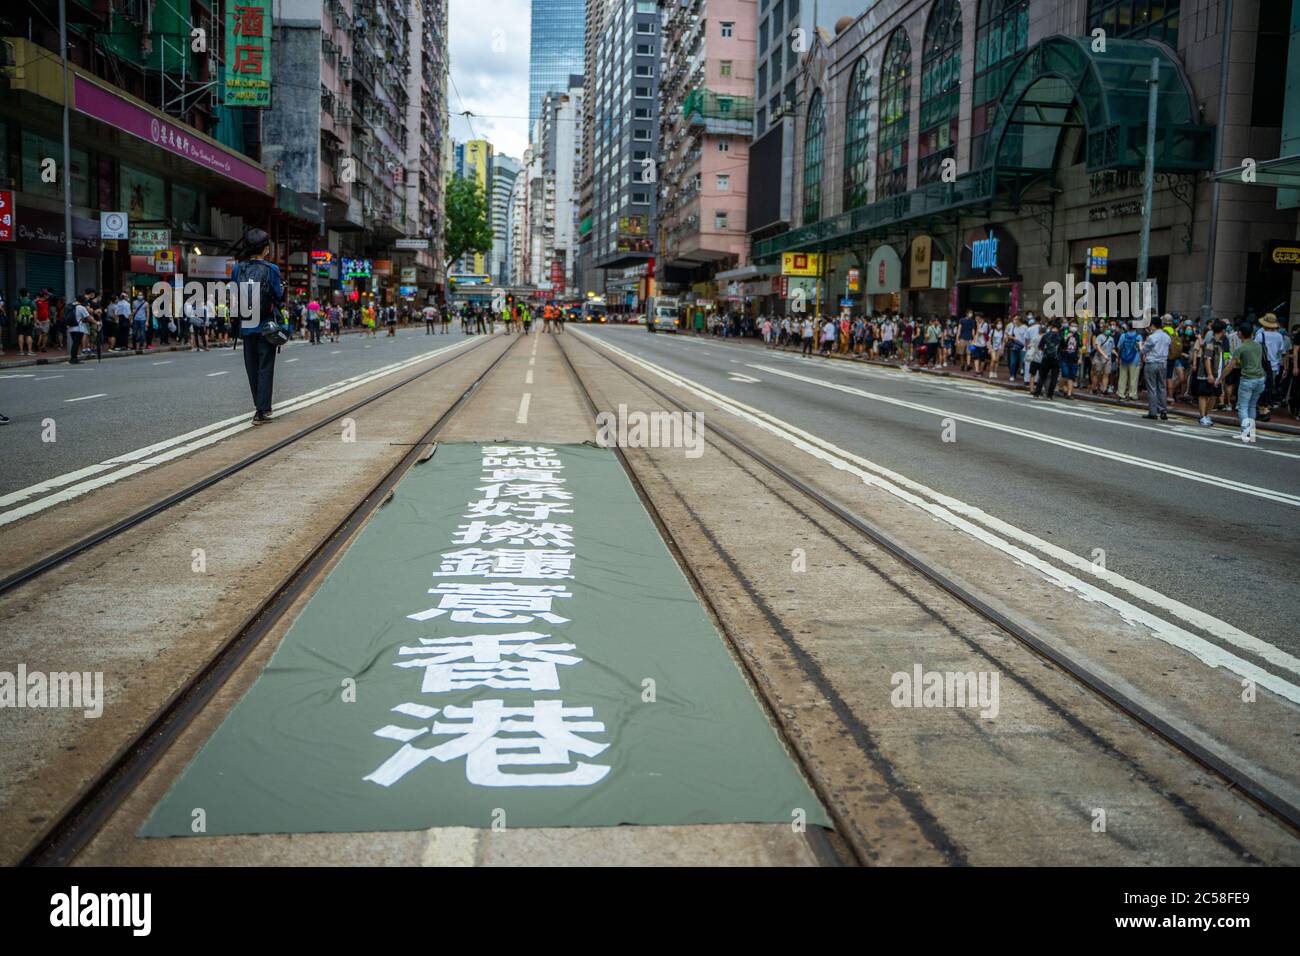 Ein Transparent mit der Aufschrift "Ich liebe Hongkong wirklich so verdammt" wurde von einem Protestierenden mitten auf einer belebten Straße hinterlassen.Tausende gingen zum 23. Jahrestag der Übergabe von Großbritannien an China auf die Straßen Hongkongs, um dem Polizeiverbot zu trotzen. Der Tag markiert auch den ersten Tag der Umsetzung des umstrittenen nationalen Sicherheitsgesetzes, das Peking auferlegt hat, und das viele als eklatanten Angriff auf die Menschenrechte in der Stadt sahen. Stockfoto